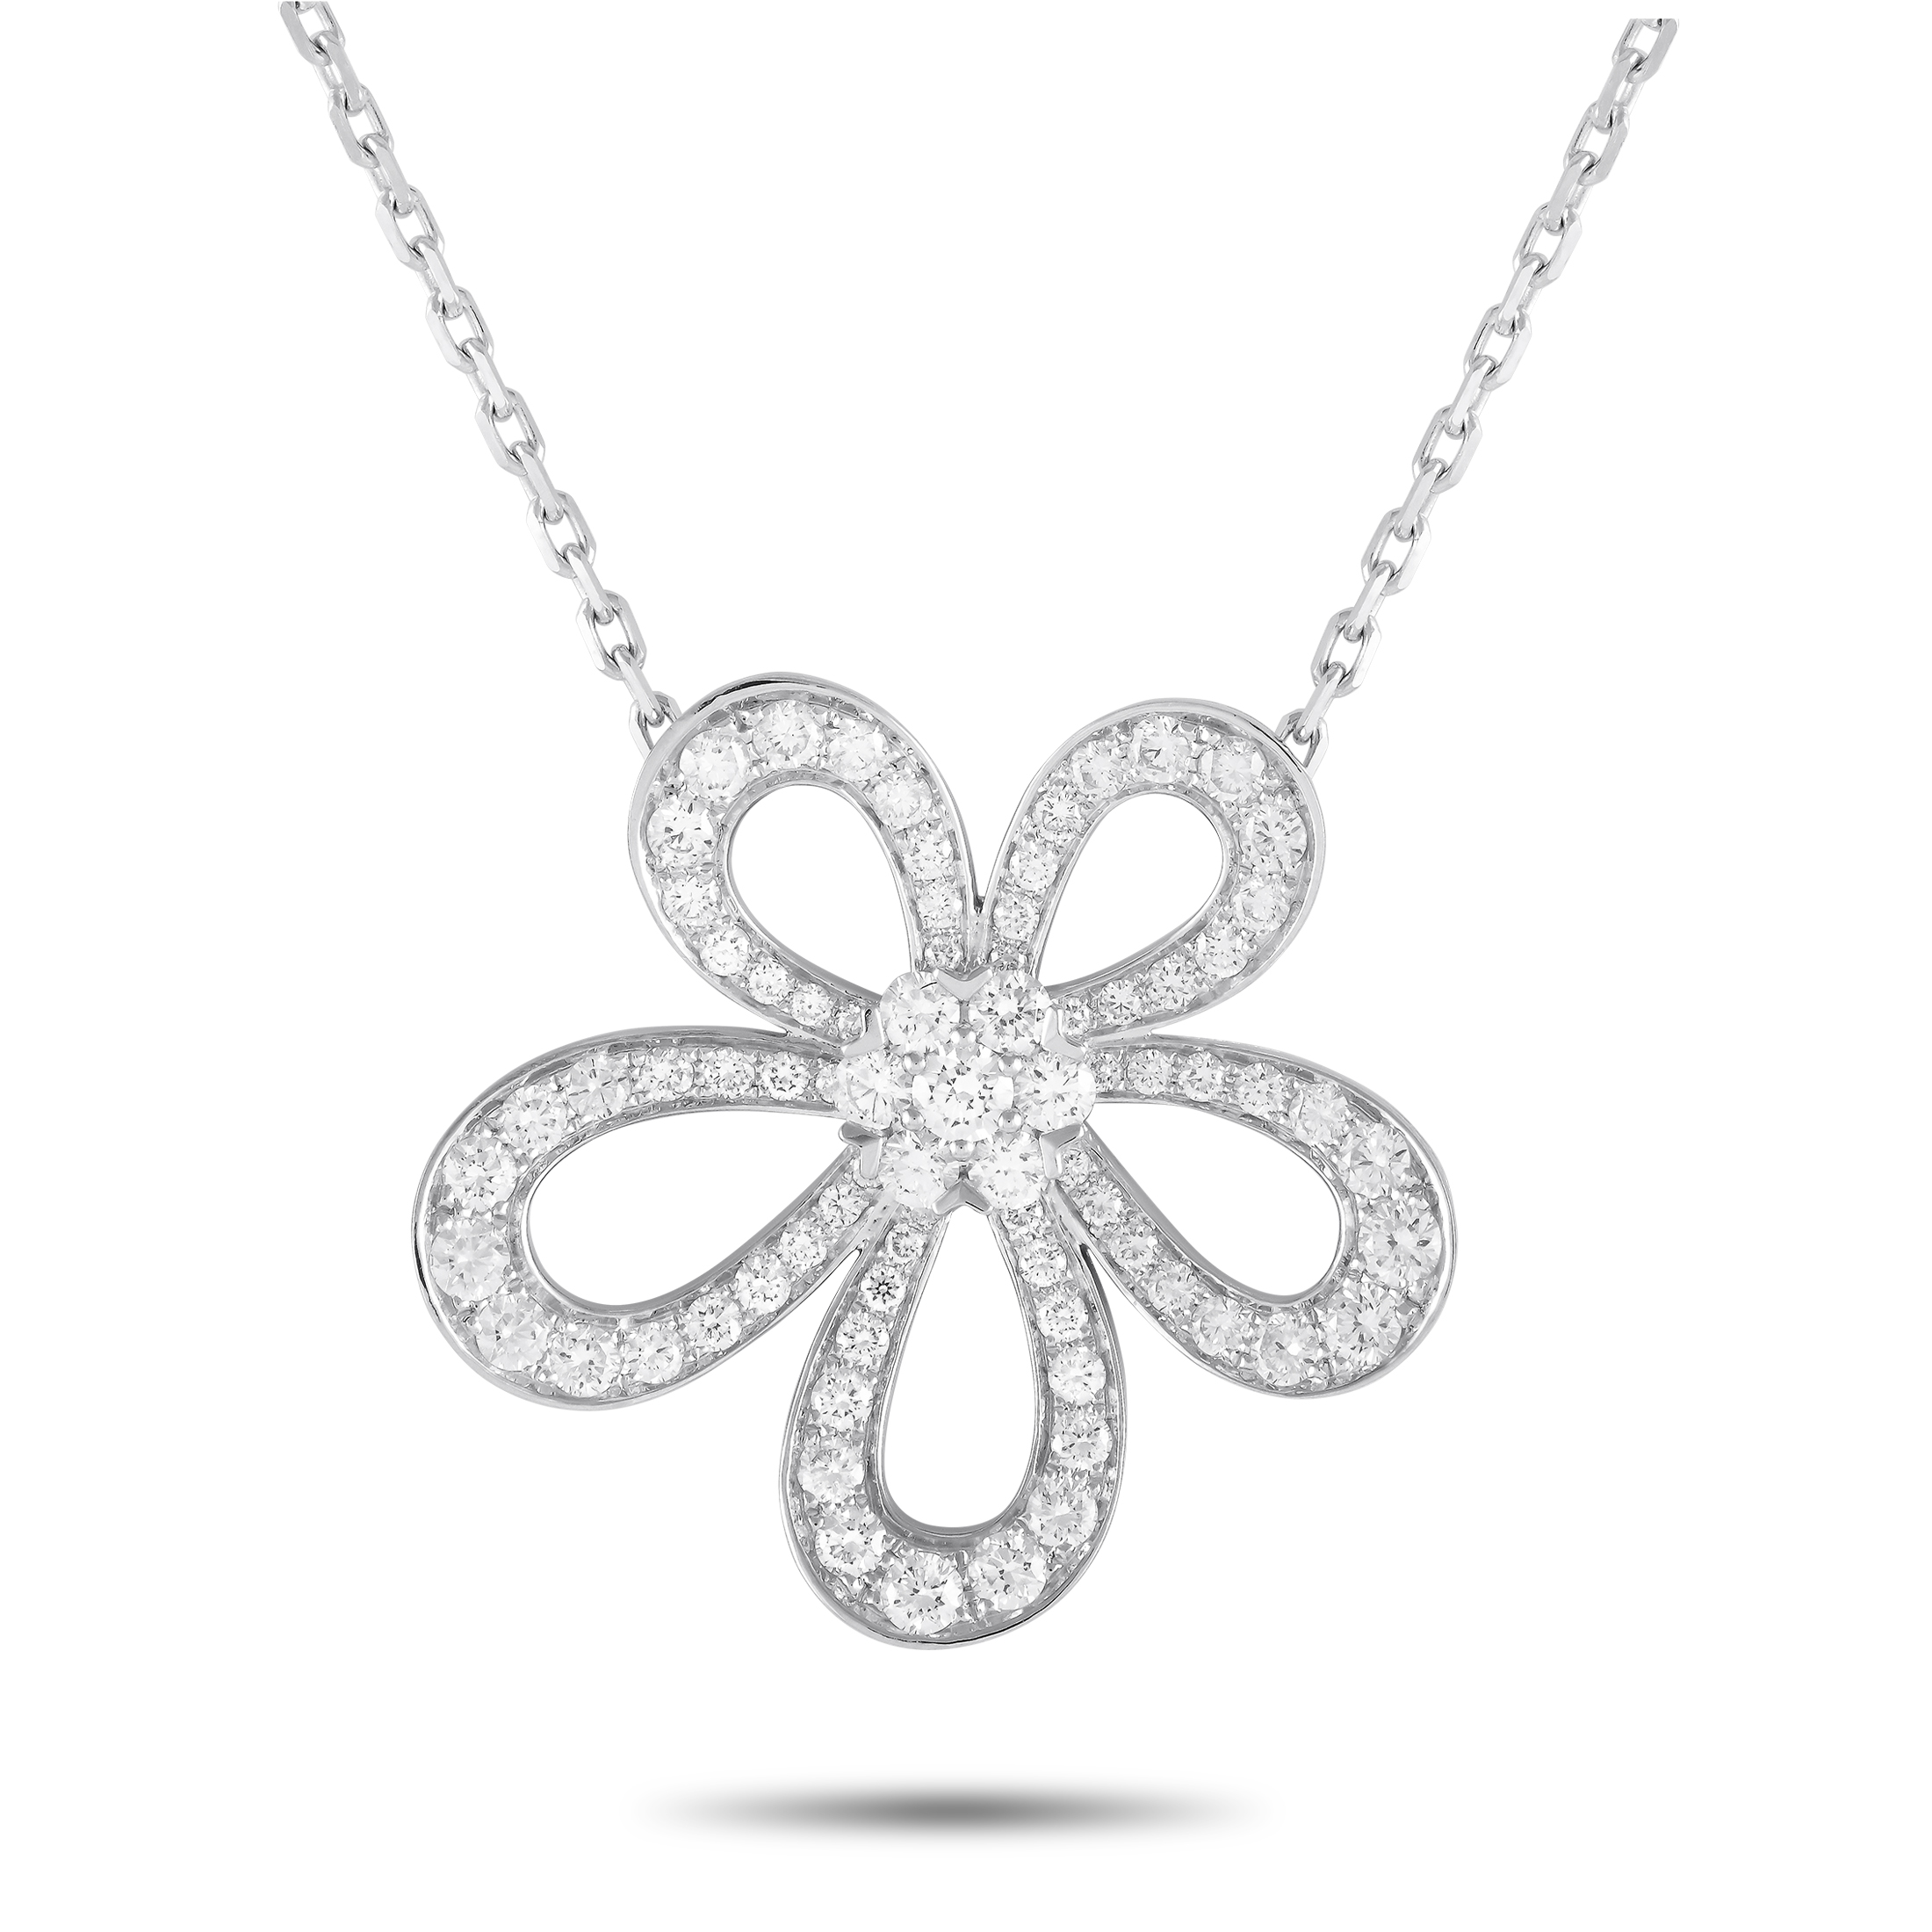 Van Cleef & Arpels Van Cleef & Arpels 18K White Gold 2.37ct Diamond Flower Lace Pendant Necklace VCARP05100